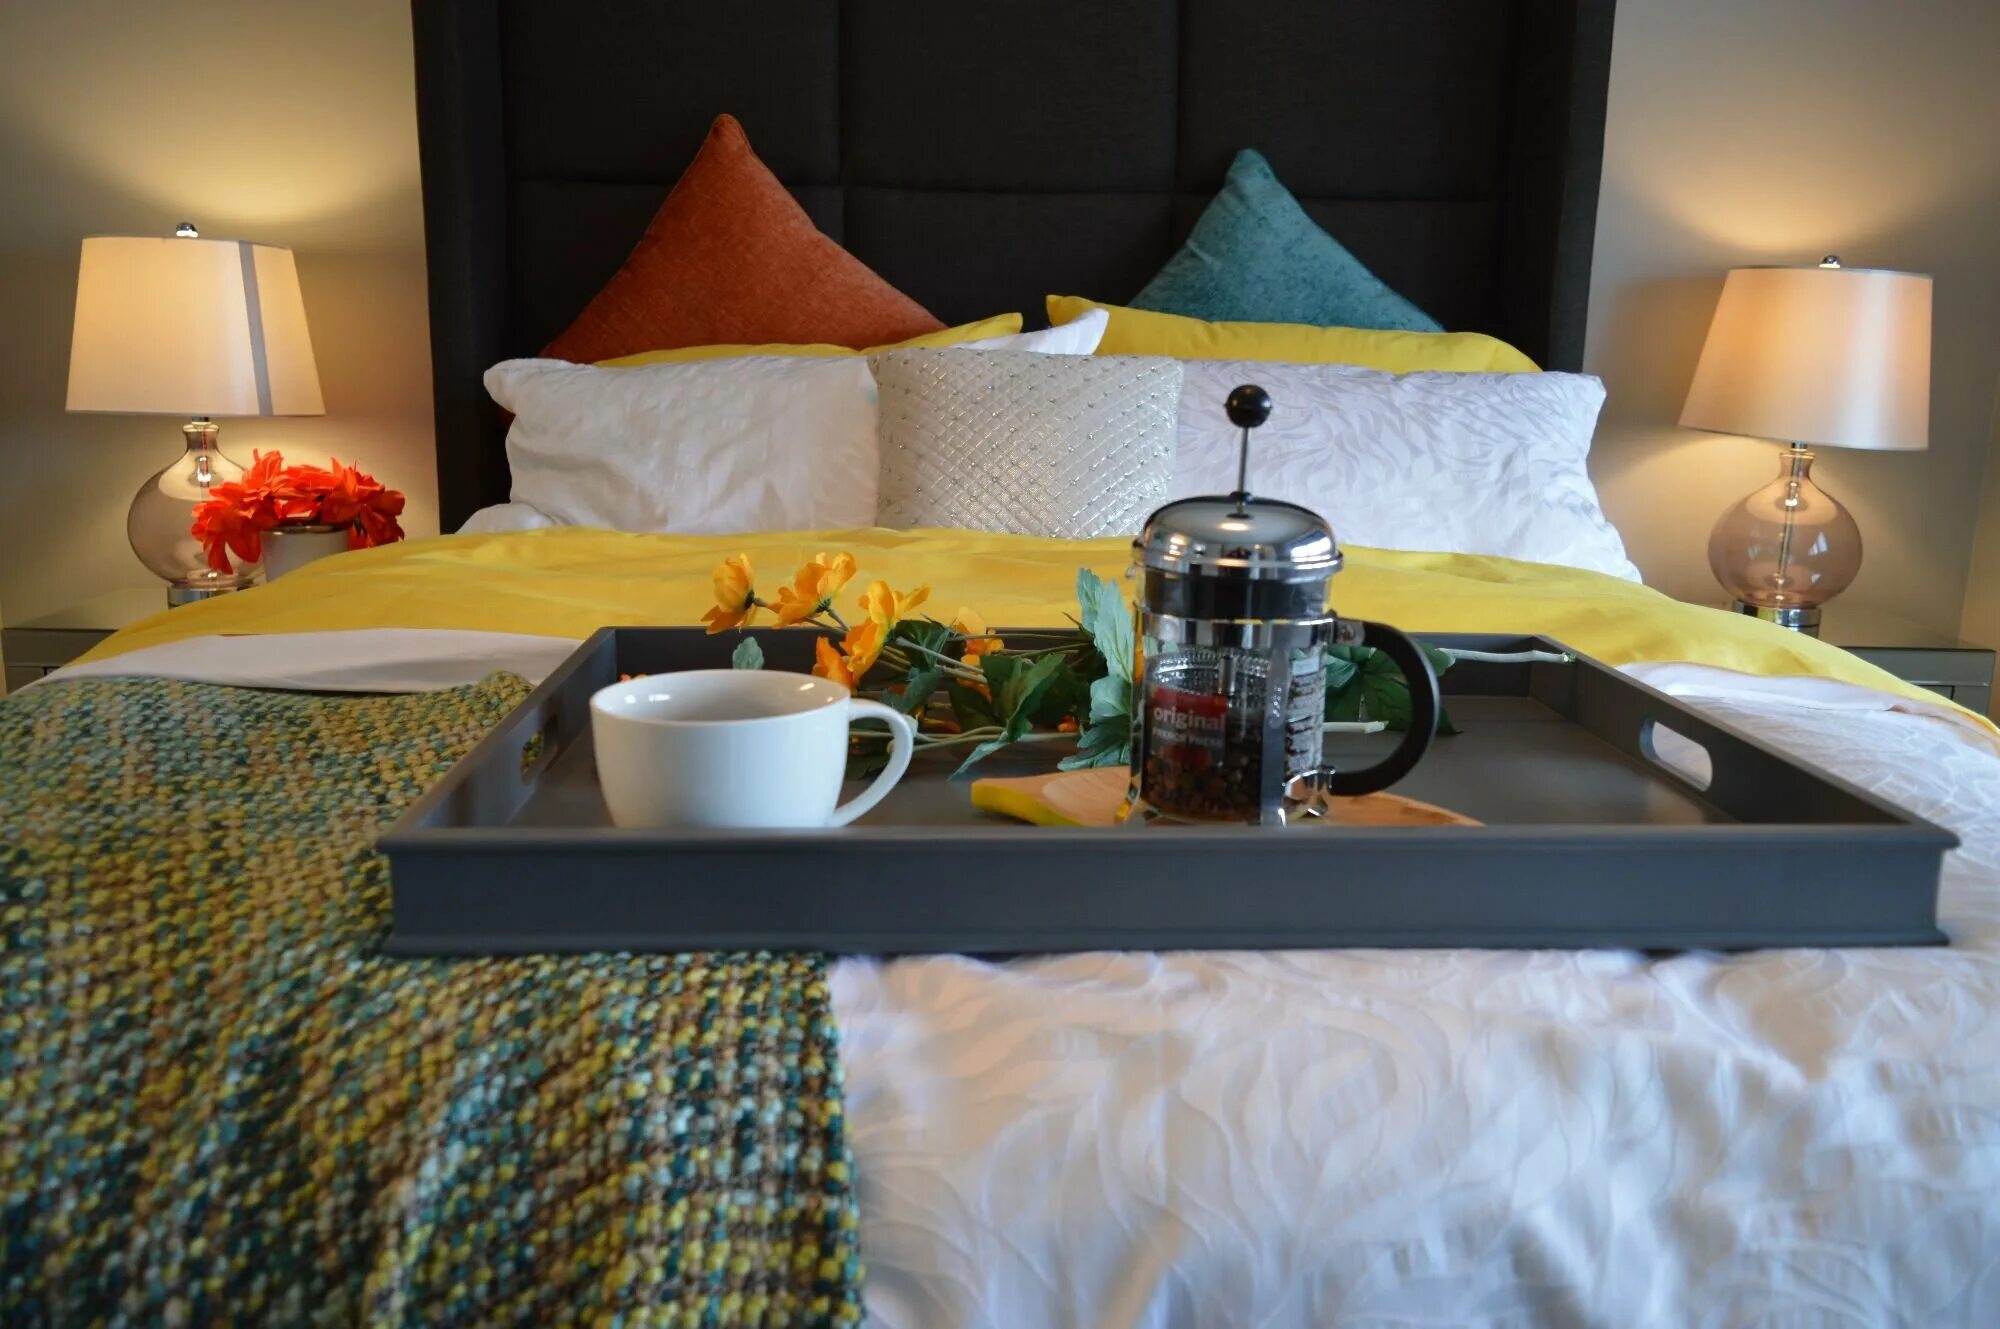 Кровать в отеле с завтраком. Кровати для гостиниц. Завтрак в постель в отеле. Завтрак в кровать.